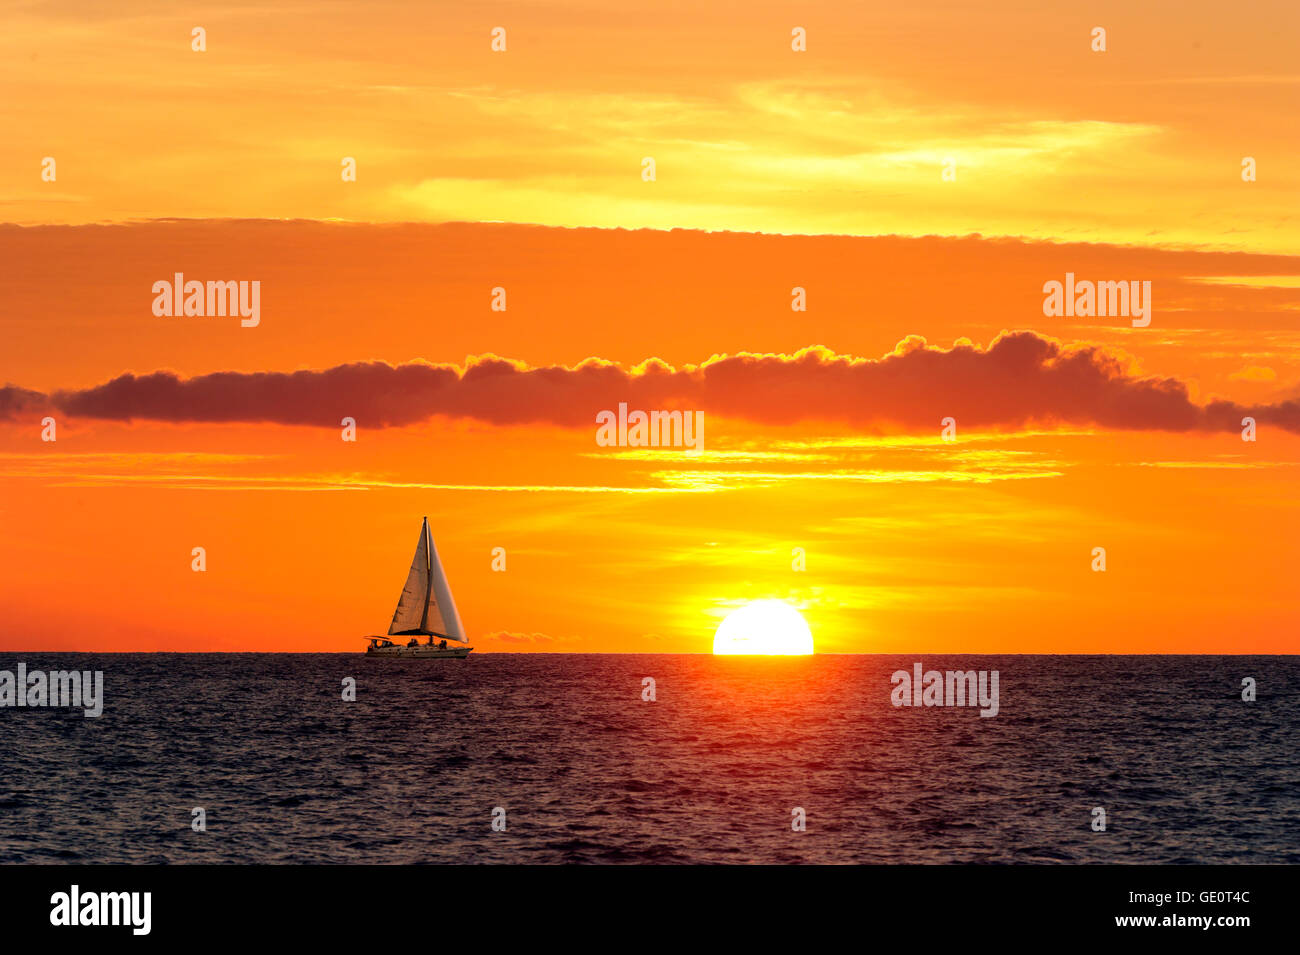 La vela Sunset es un velero que se mueve a lo largo del agua a medida que el sol va abajo en el horizonte del océano. Foto de stock